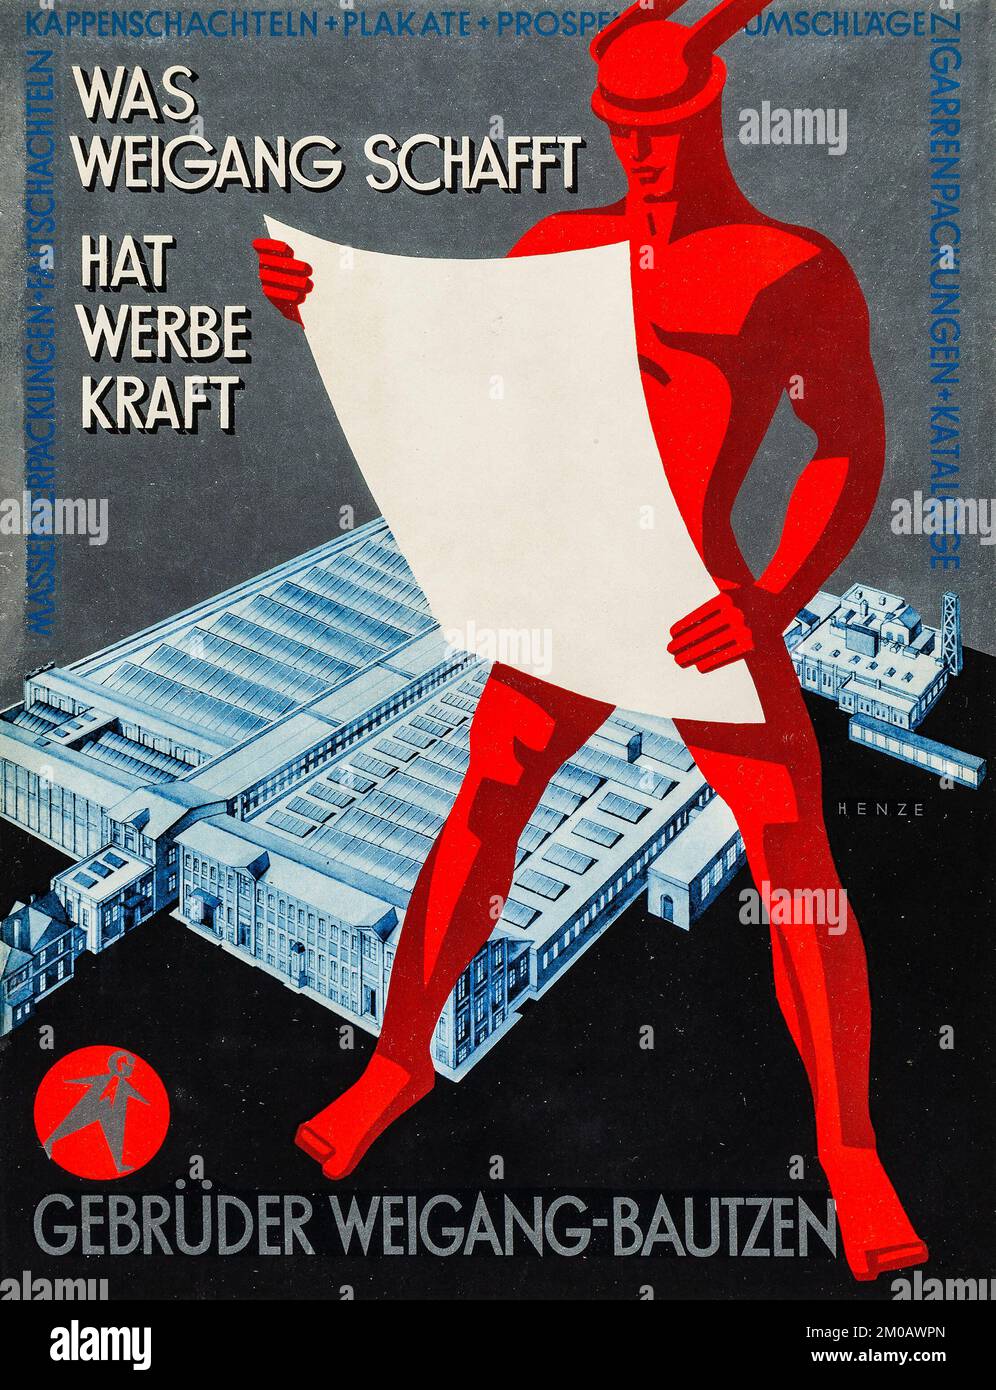 Gebrüder WEIGANG-BAUTZEN - was weigang schafft - chapeau werbekraft - oeuvre de Henze - affiche publicitaire 1930 Banque D'Images